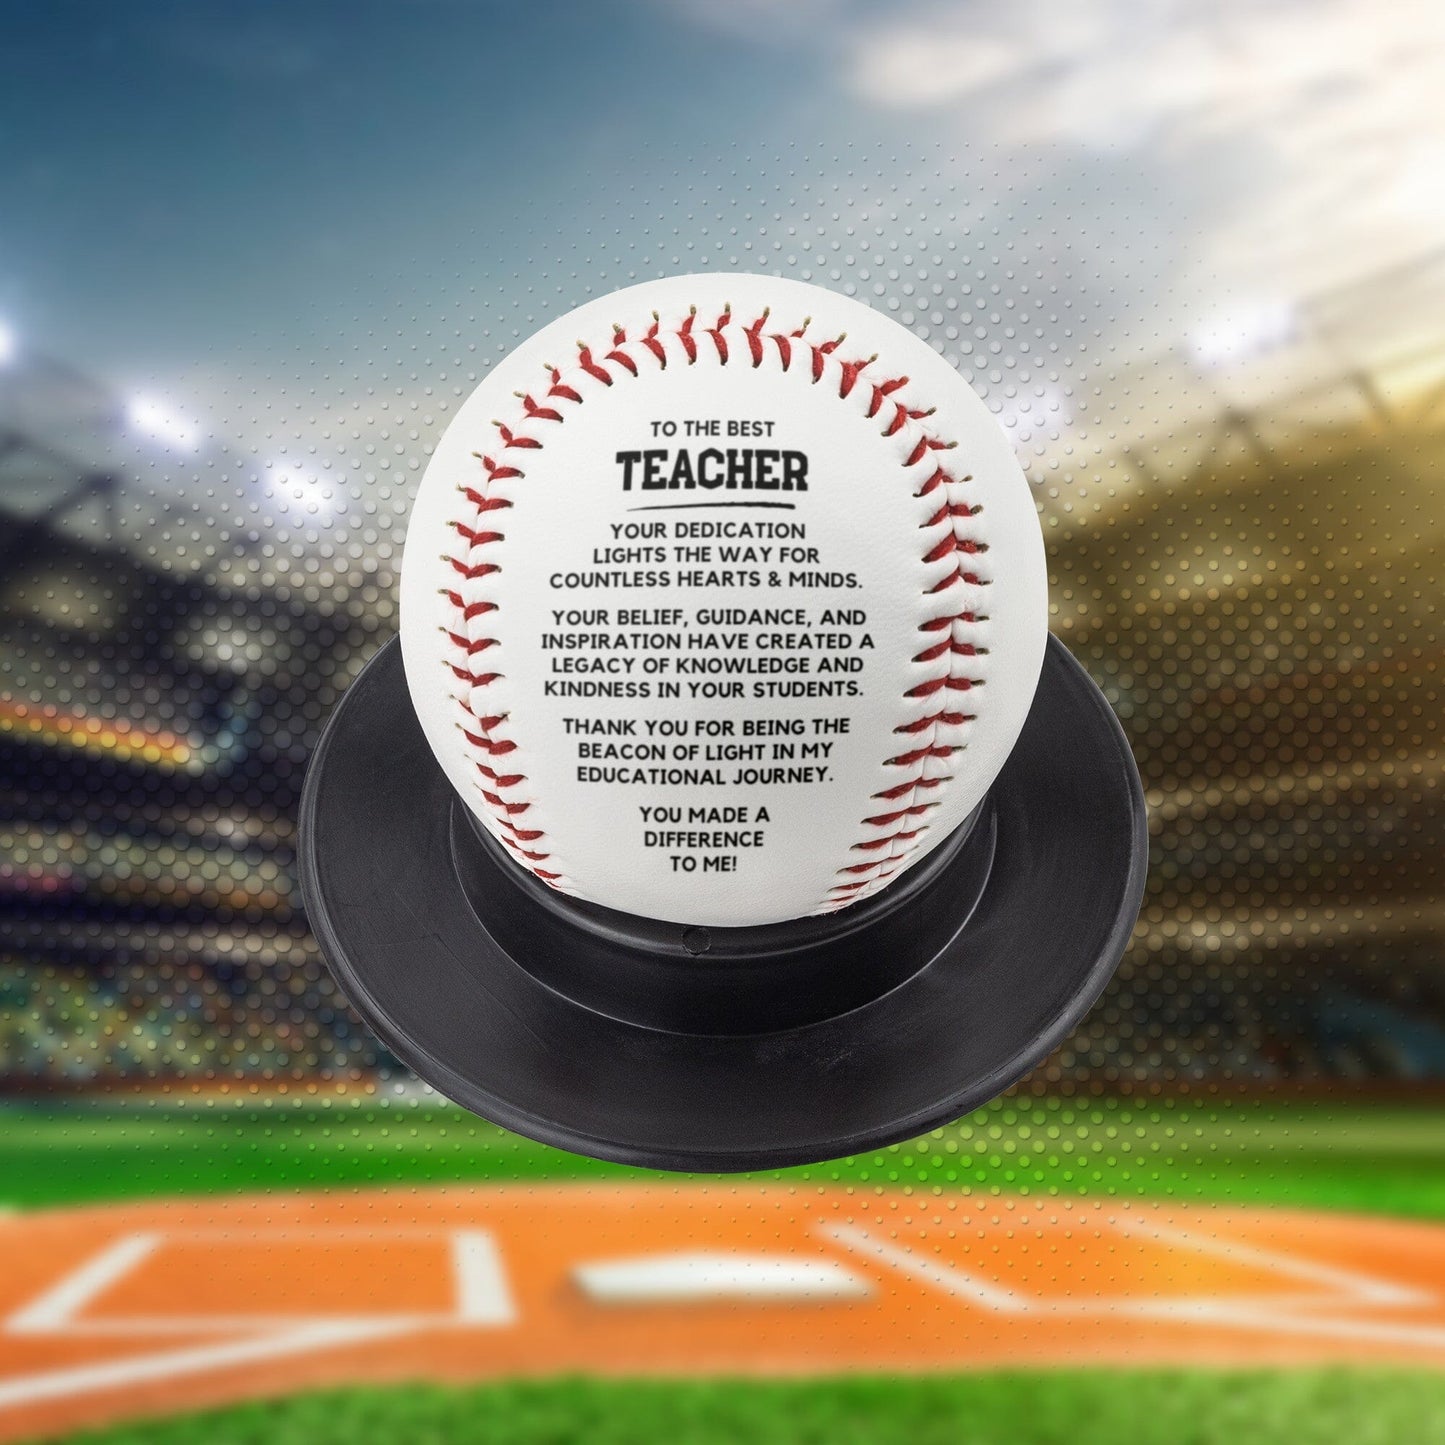 HGF#356BB Best Teacher - Light The Way Baseball Sports 